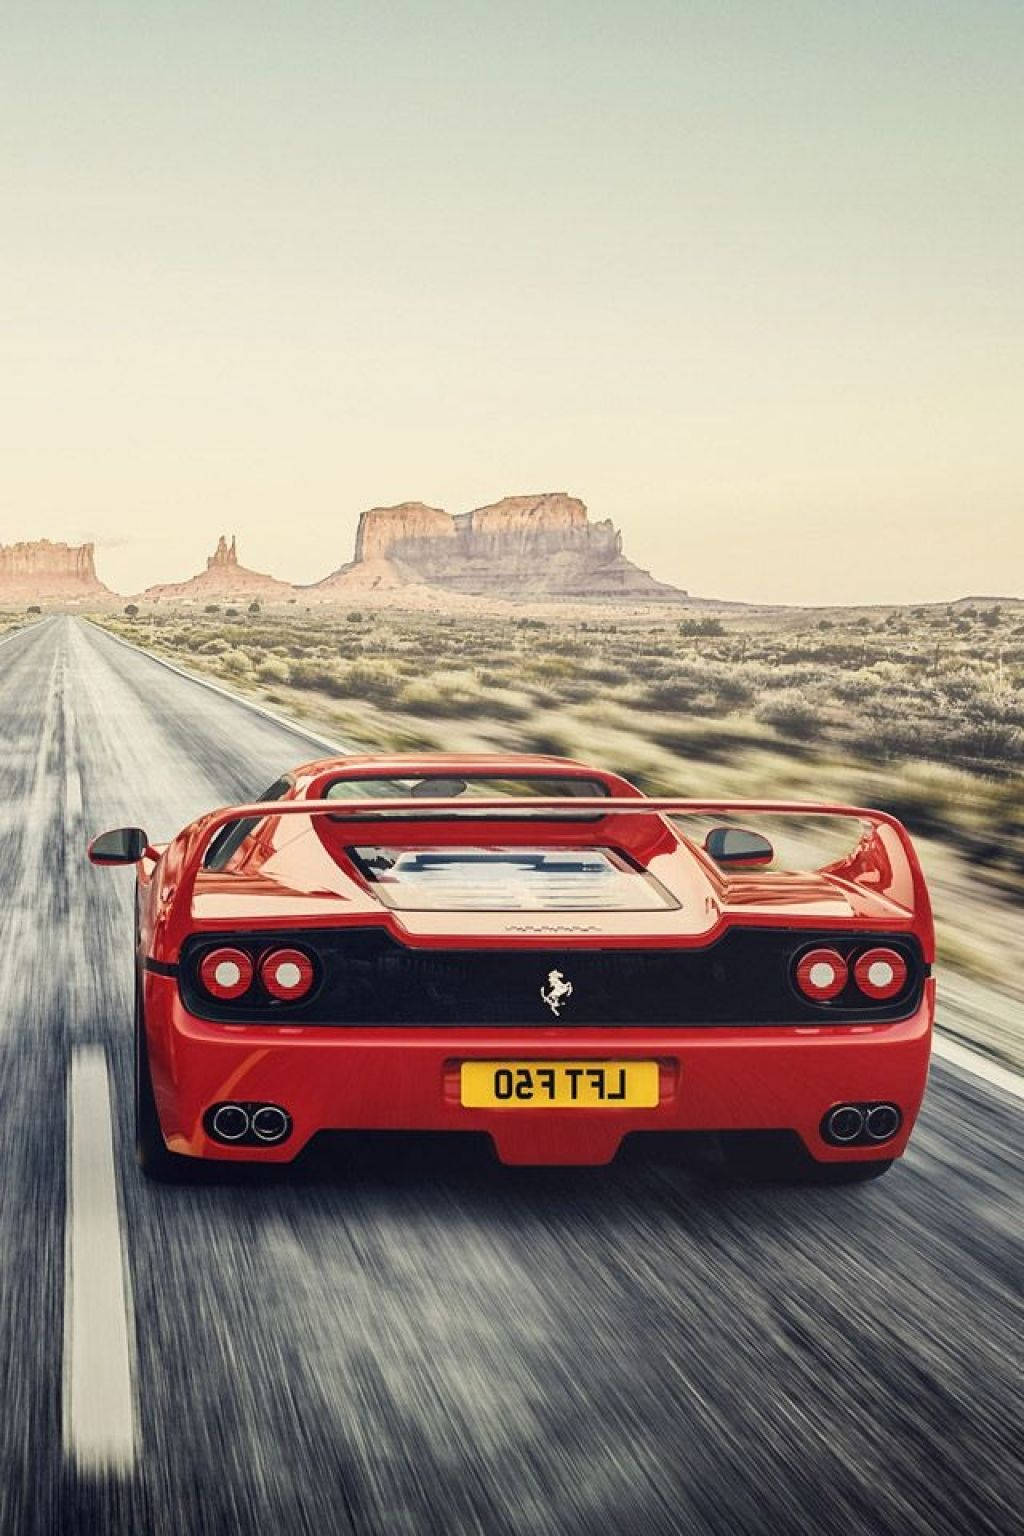 Telefonof50 Ferrari Rosso Su Strada Nel Deserto Sfondo